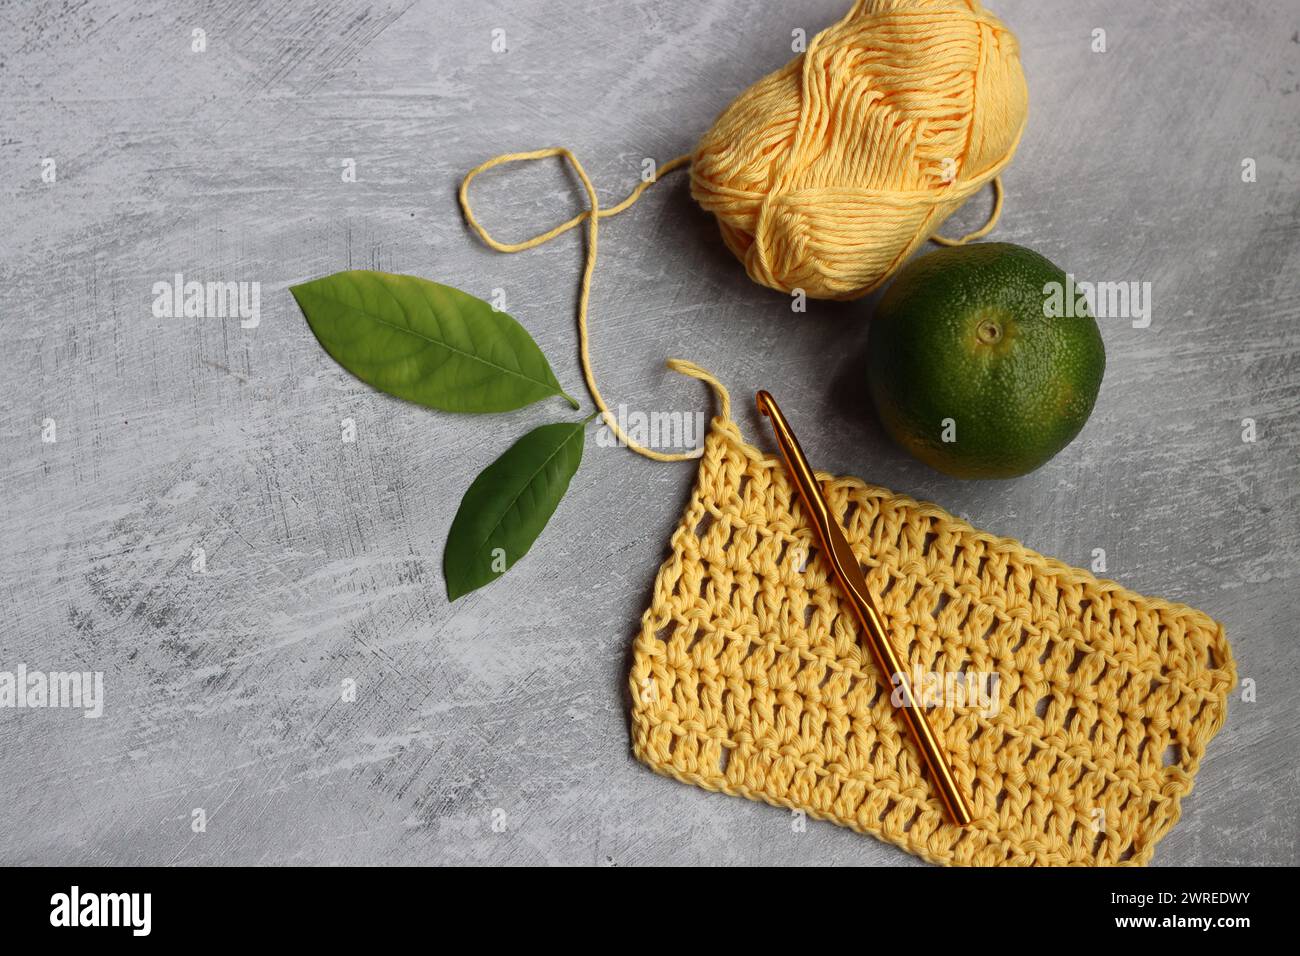 Crochet écharpe en cours. Crochet crochet, fil de coton jaune, citron vert et feuilles sur fond gris, vue de dessus Banque D'Images